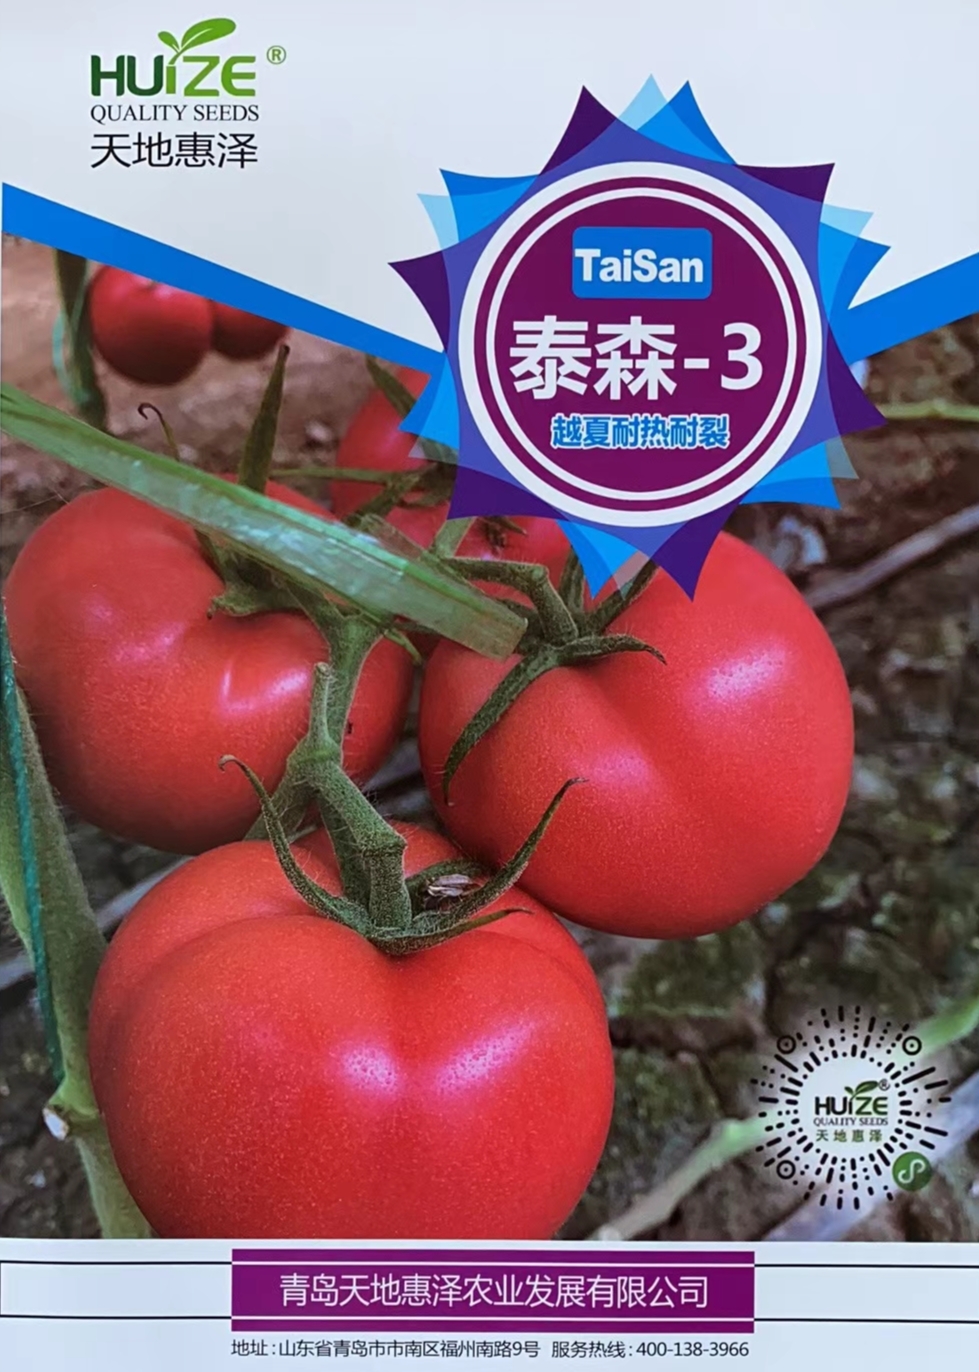 山东青岛泰森-3番茄种子批发公司销售价格 泰森-3 泰森-3种子 惠泽-泰森-3种子